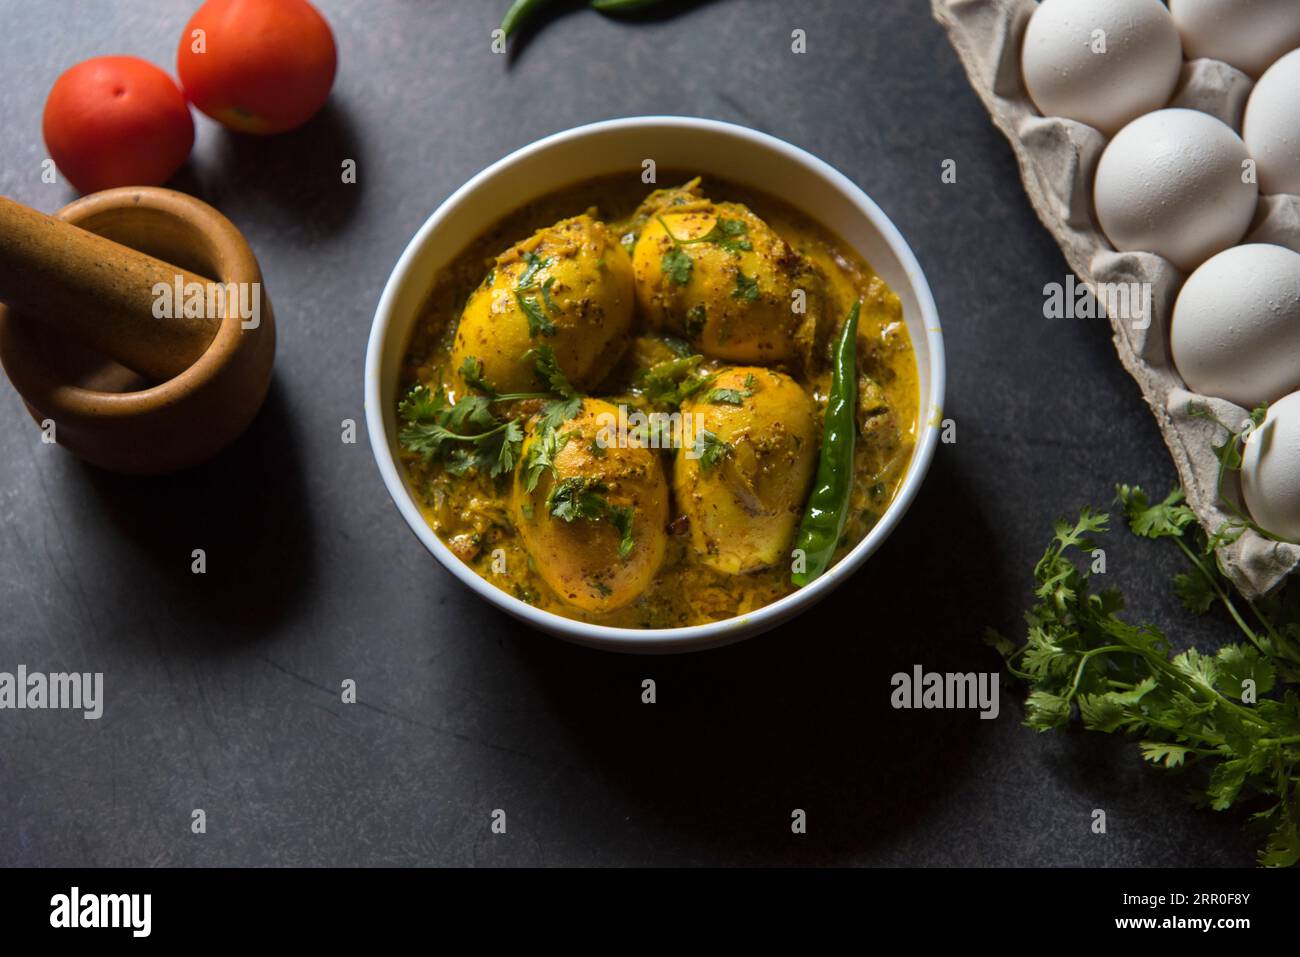 Al curry di masala all'uovo in salsa di senape servito in una ciotola. Foto Stock